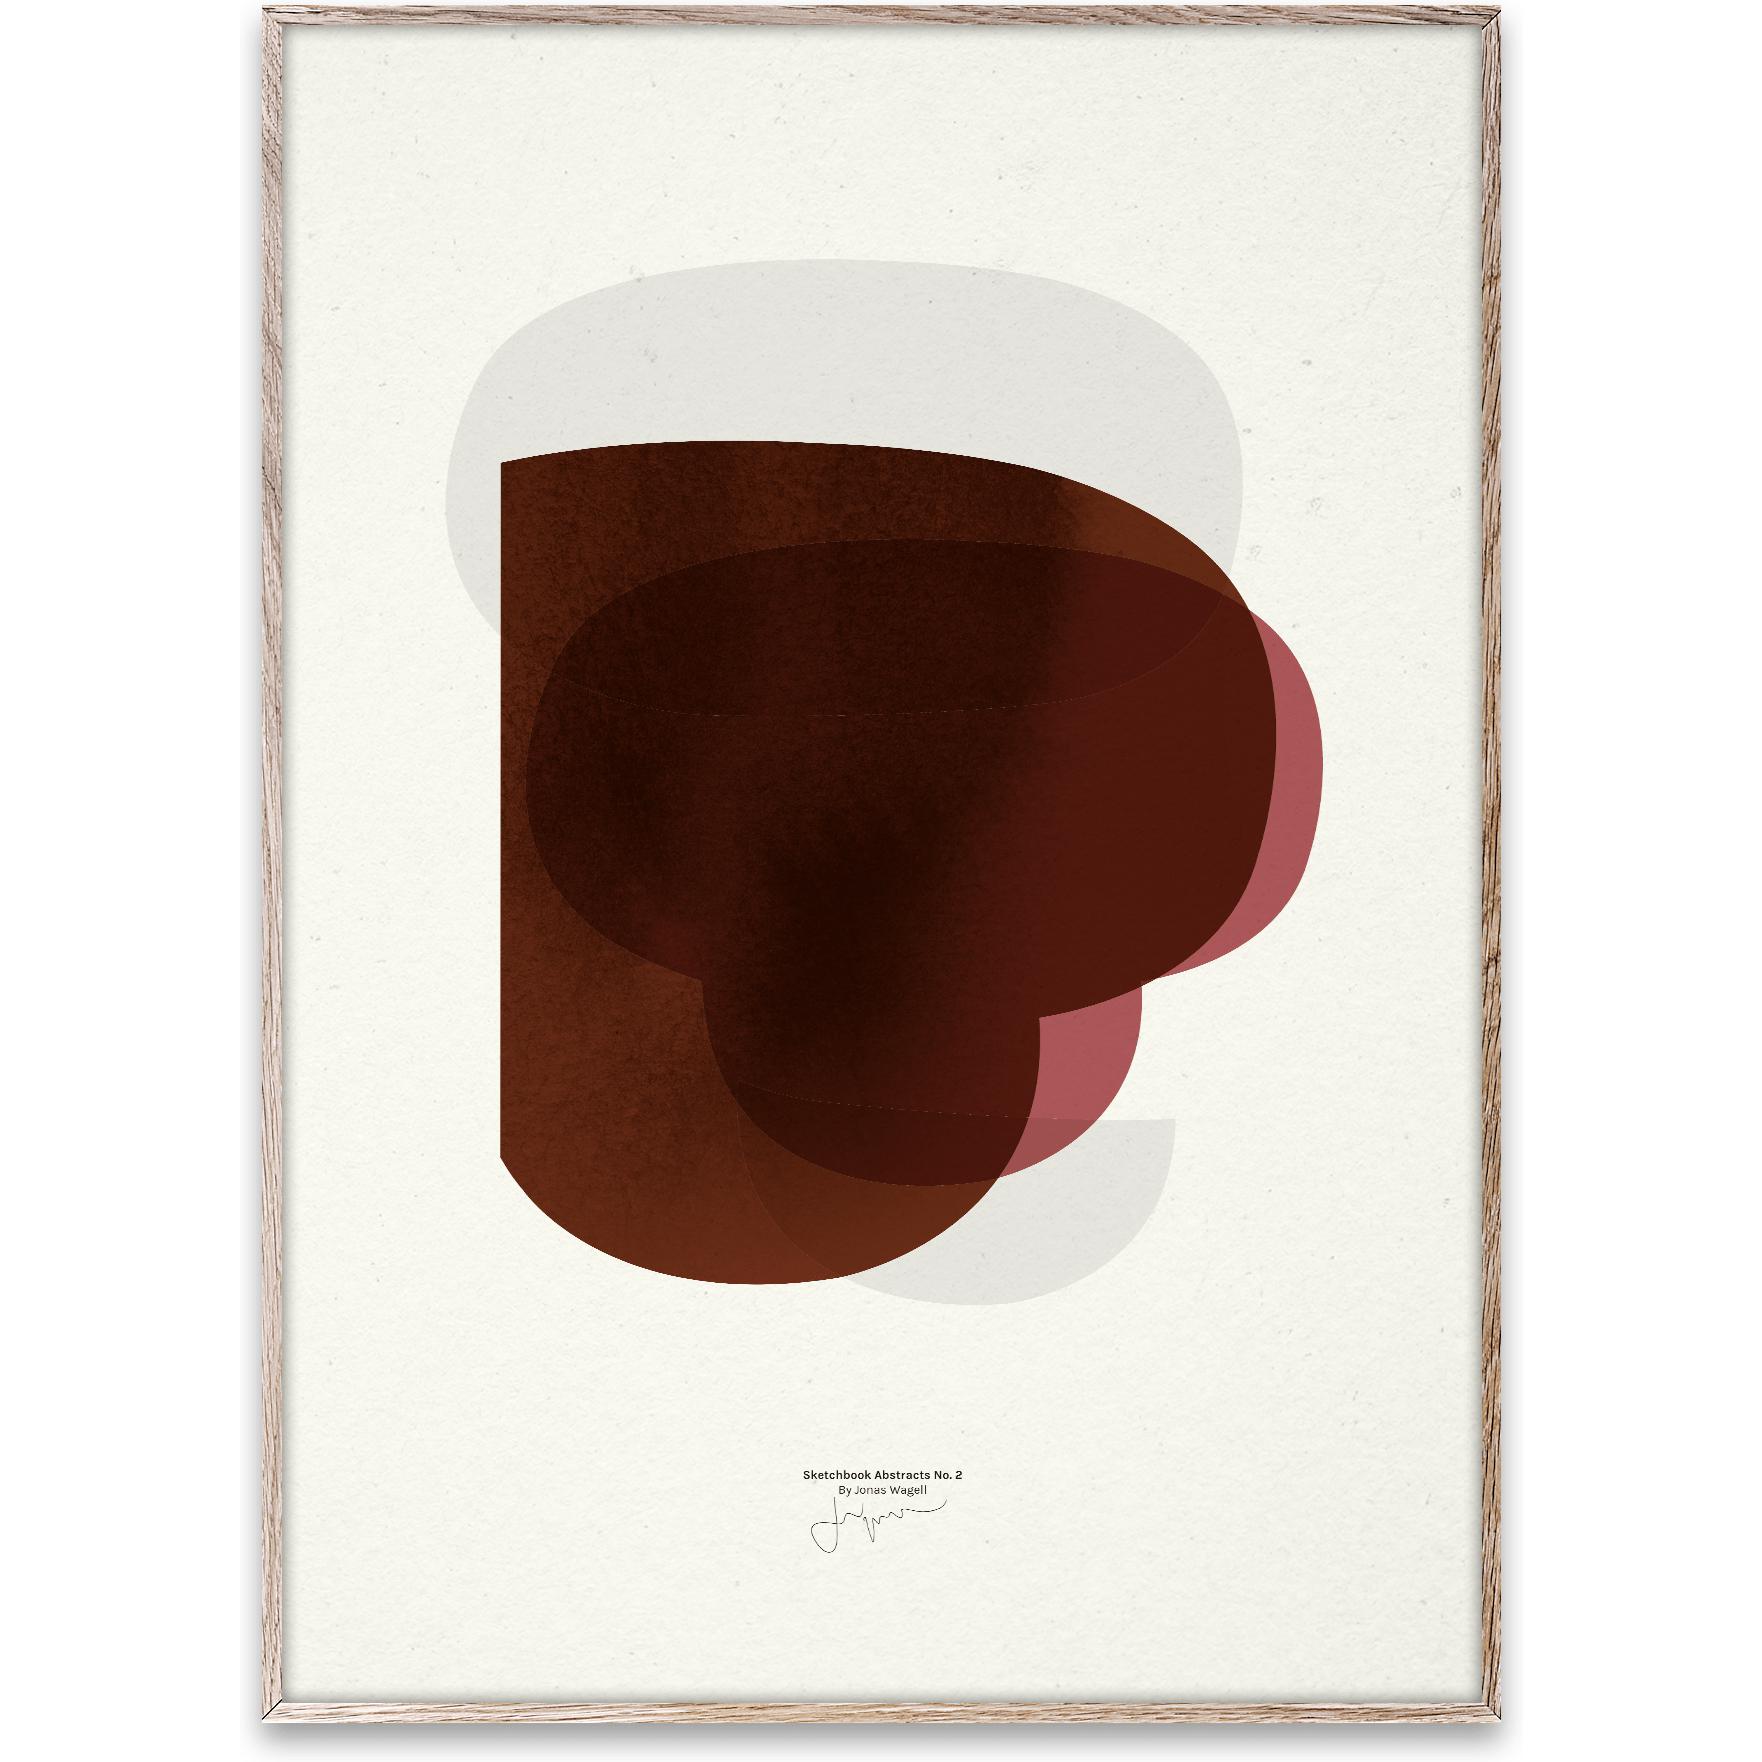 Paper Collective Skissbok abstrakt 02 affisch, 30x40 cm